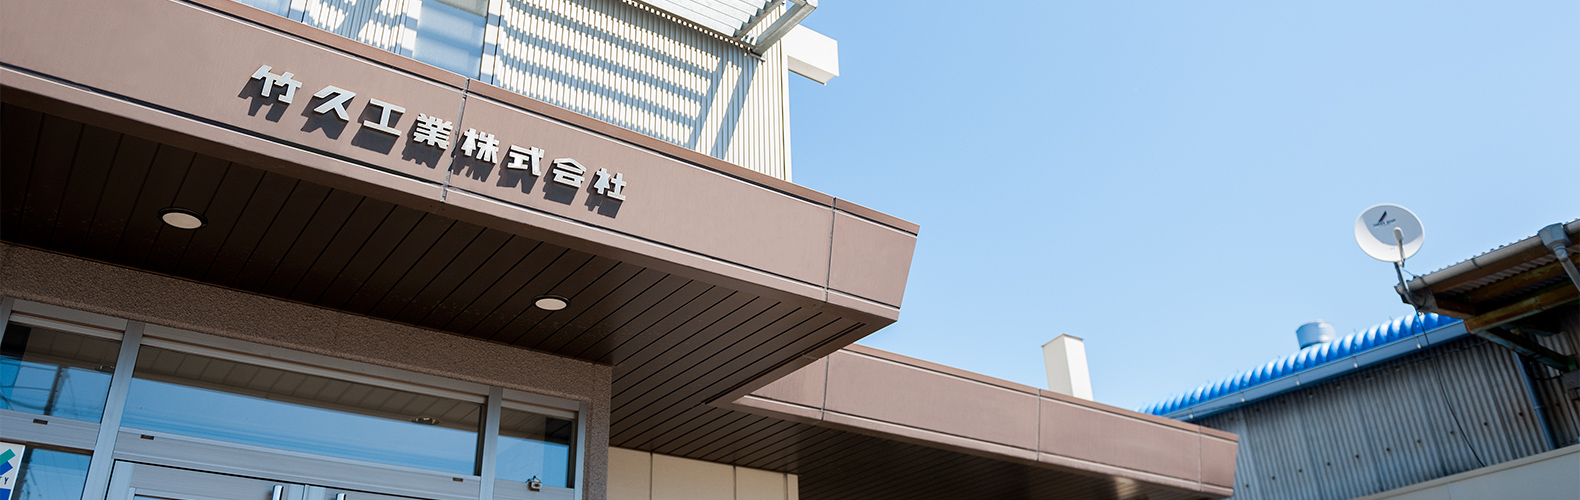 私たり竹久工業は岡山県下最大級の金属家具メーカーです。